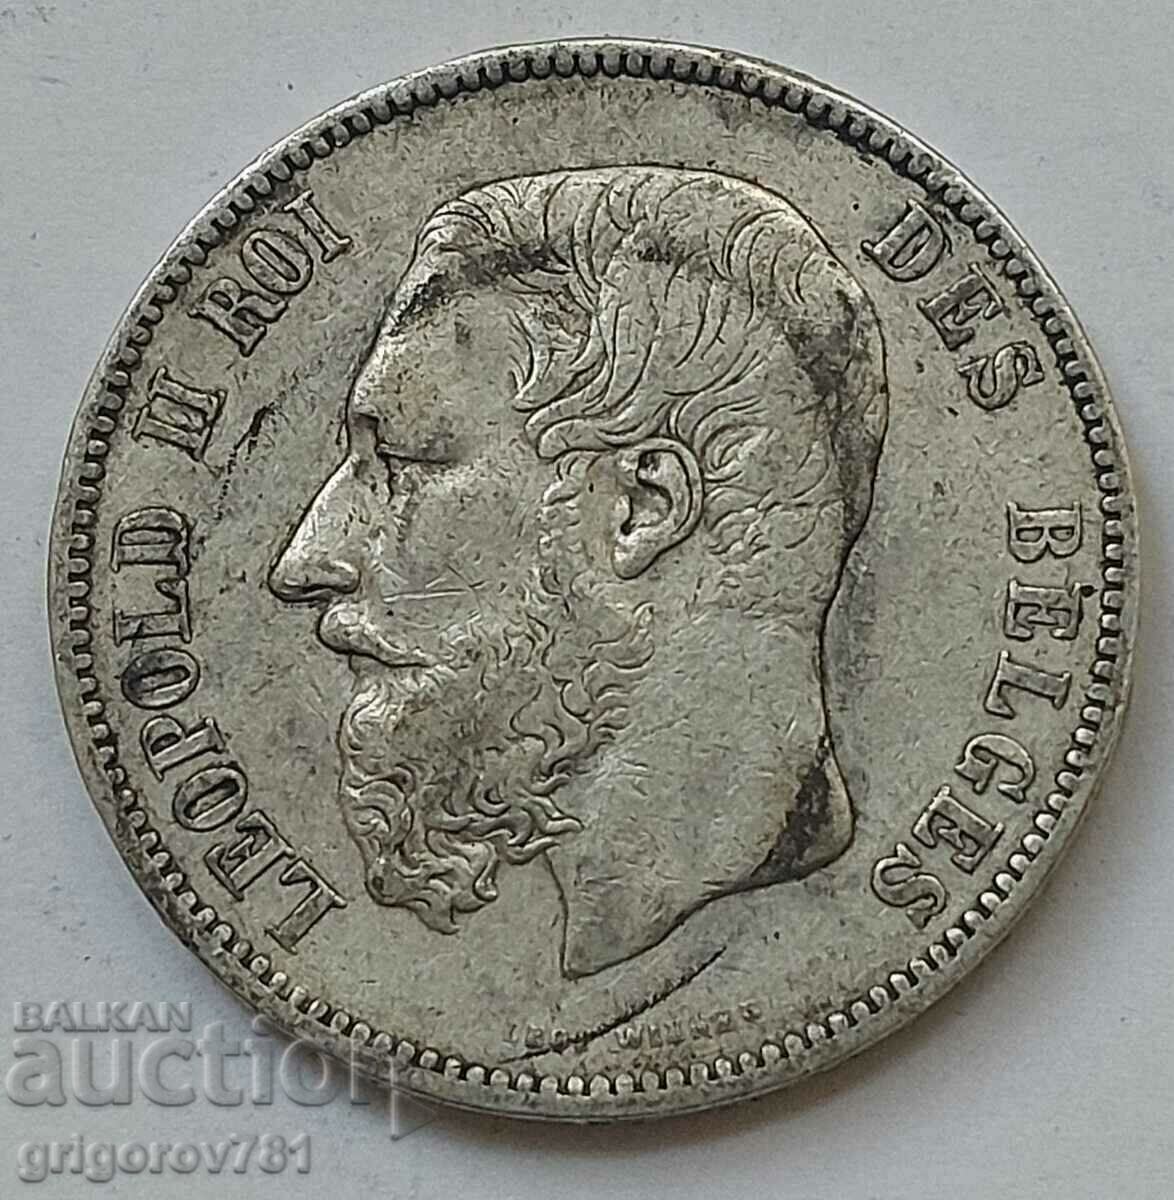 5 Francs Silver Belgium 1873 Silver Coin #181